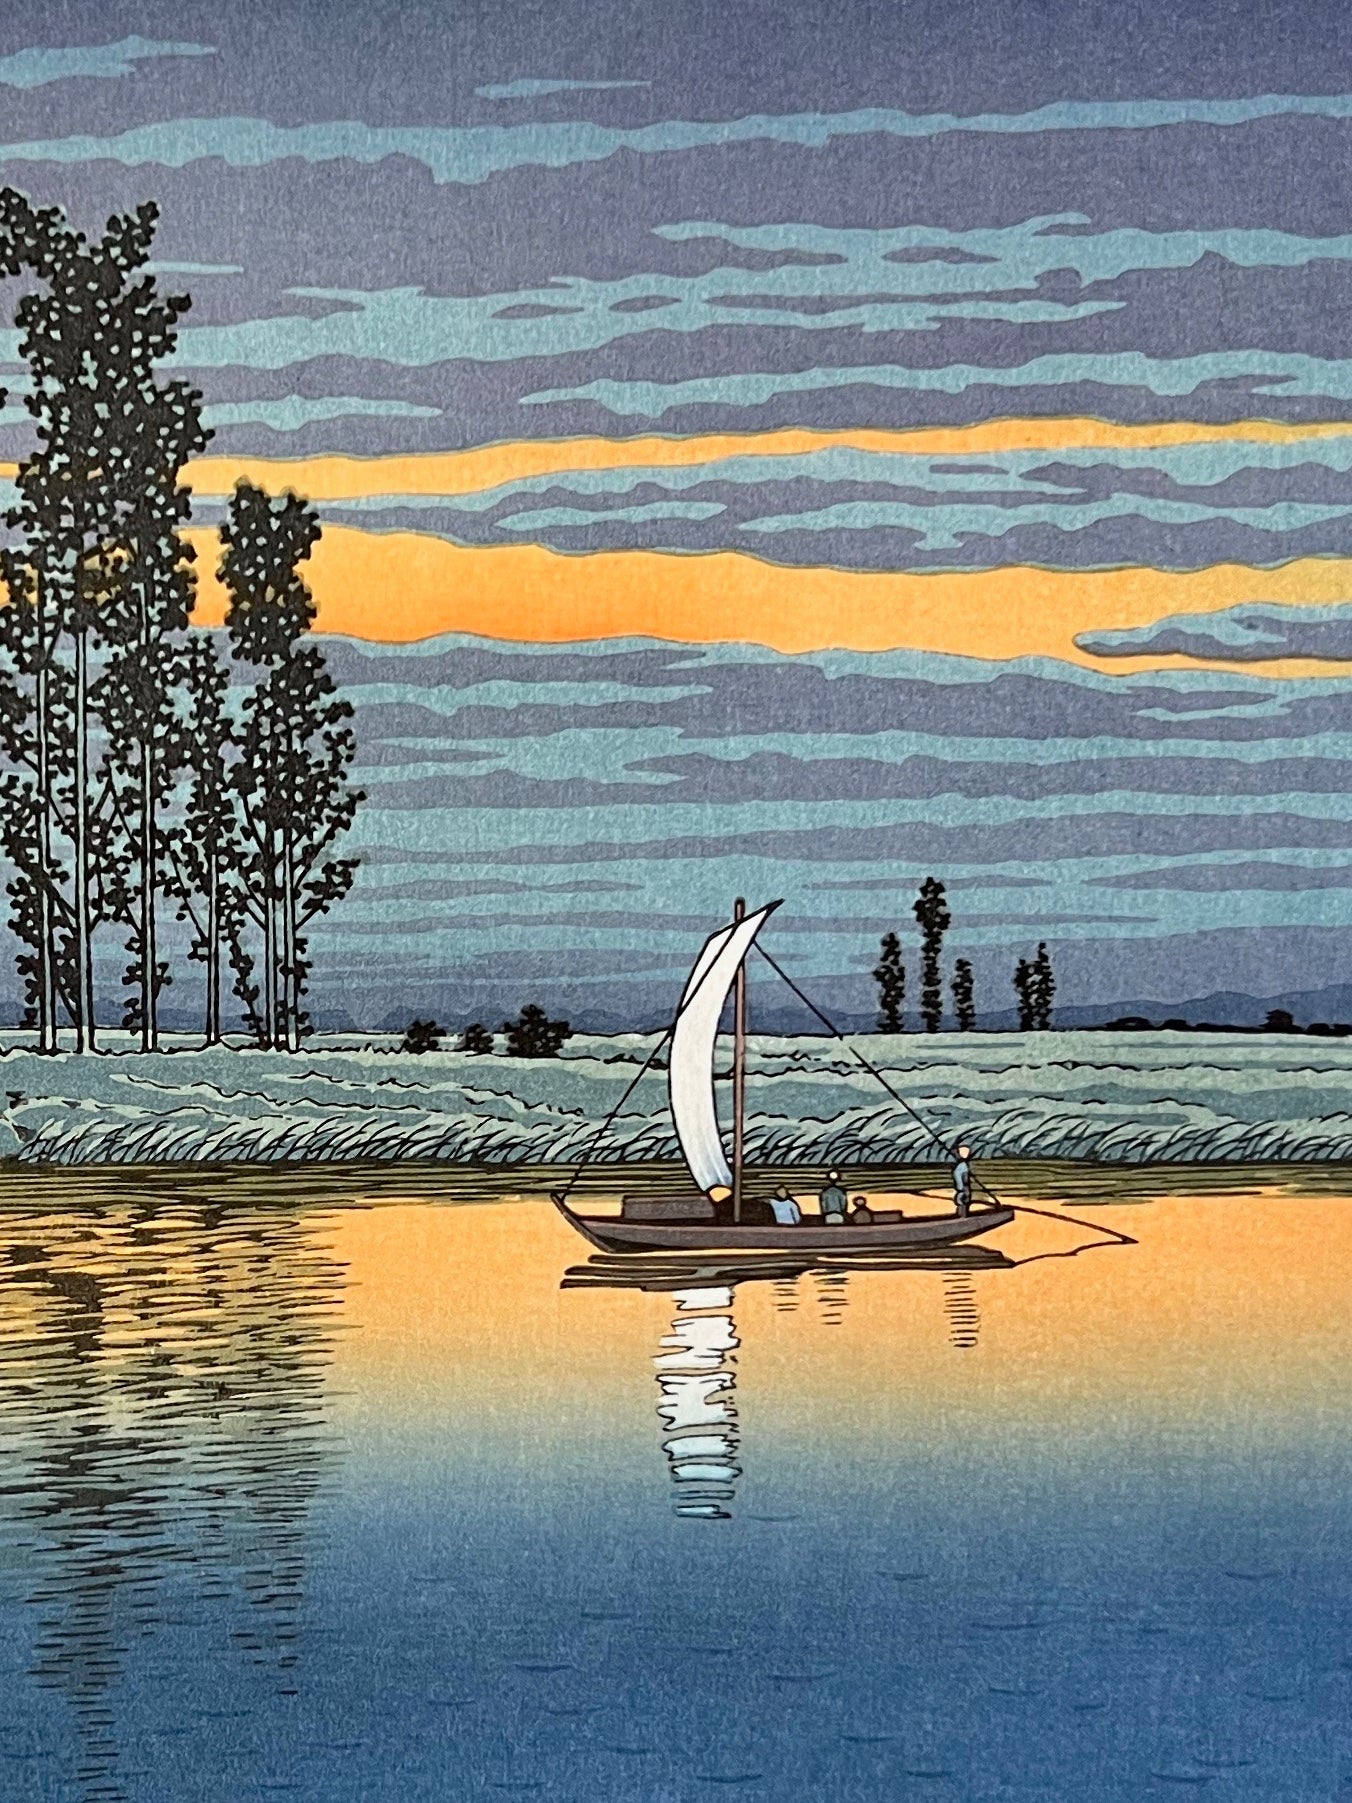 estampe japonaise shin-hanga de Hasui un bateau sur une rivière calme au crépuscule